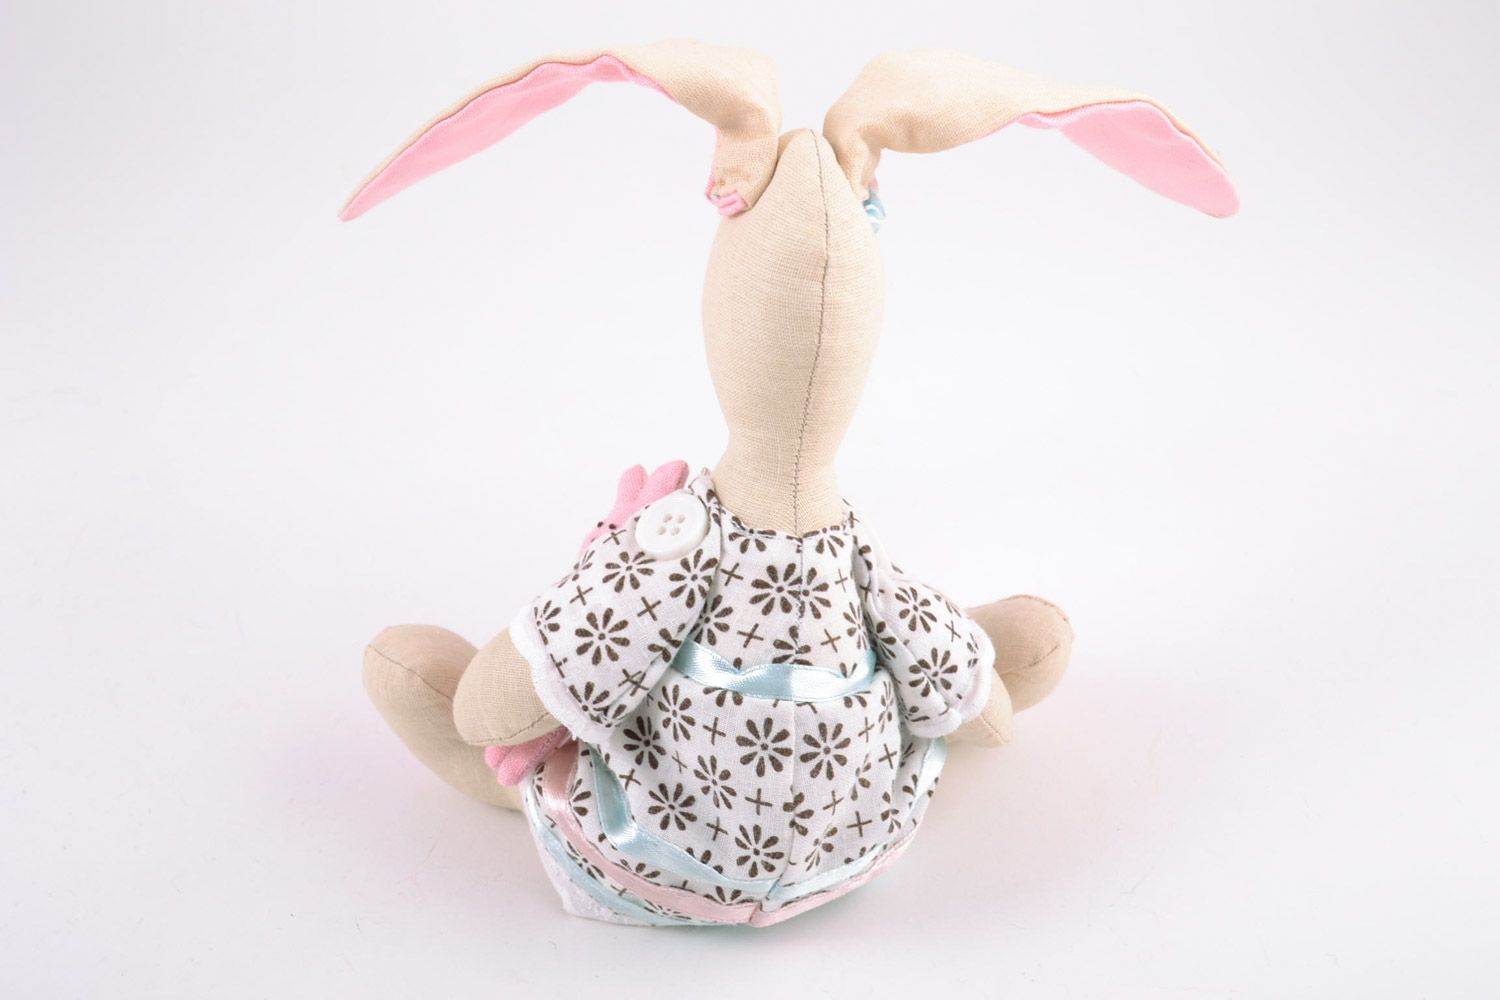 Textil Kuscheltier Hase rosa im Kleid aus Baumwolle schön für Mädchen handmade foto 5